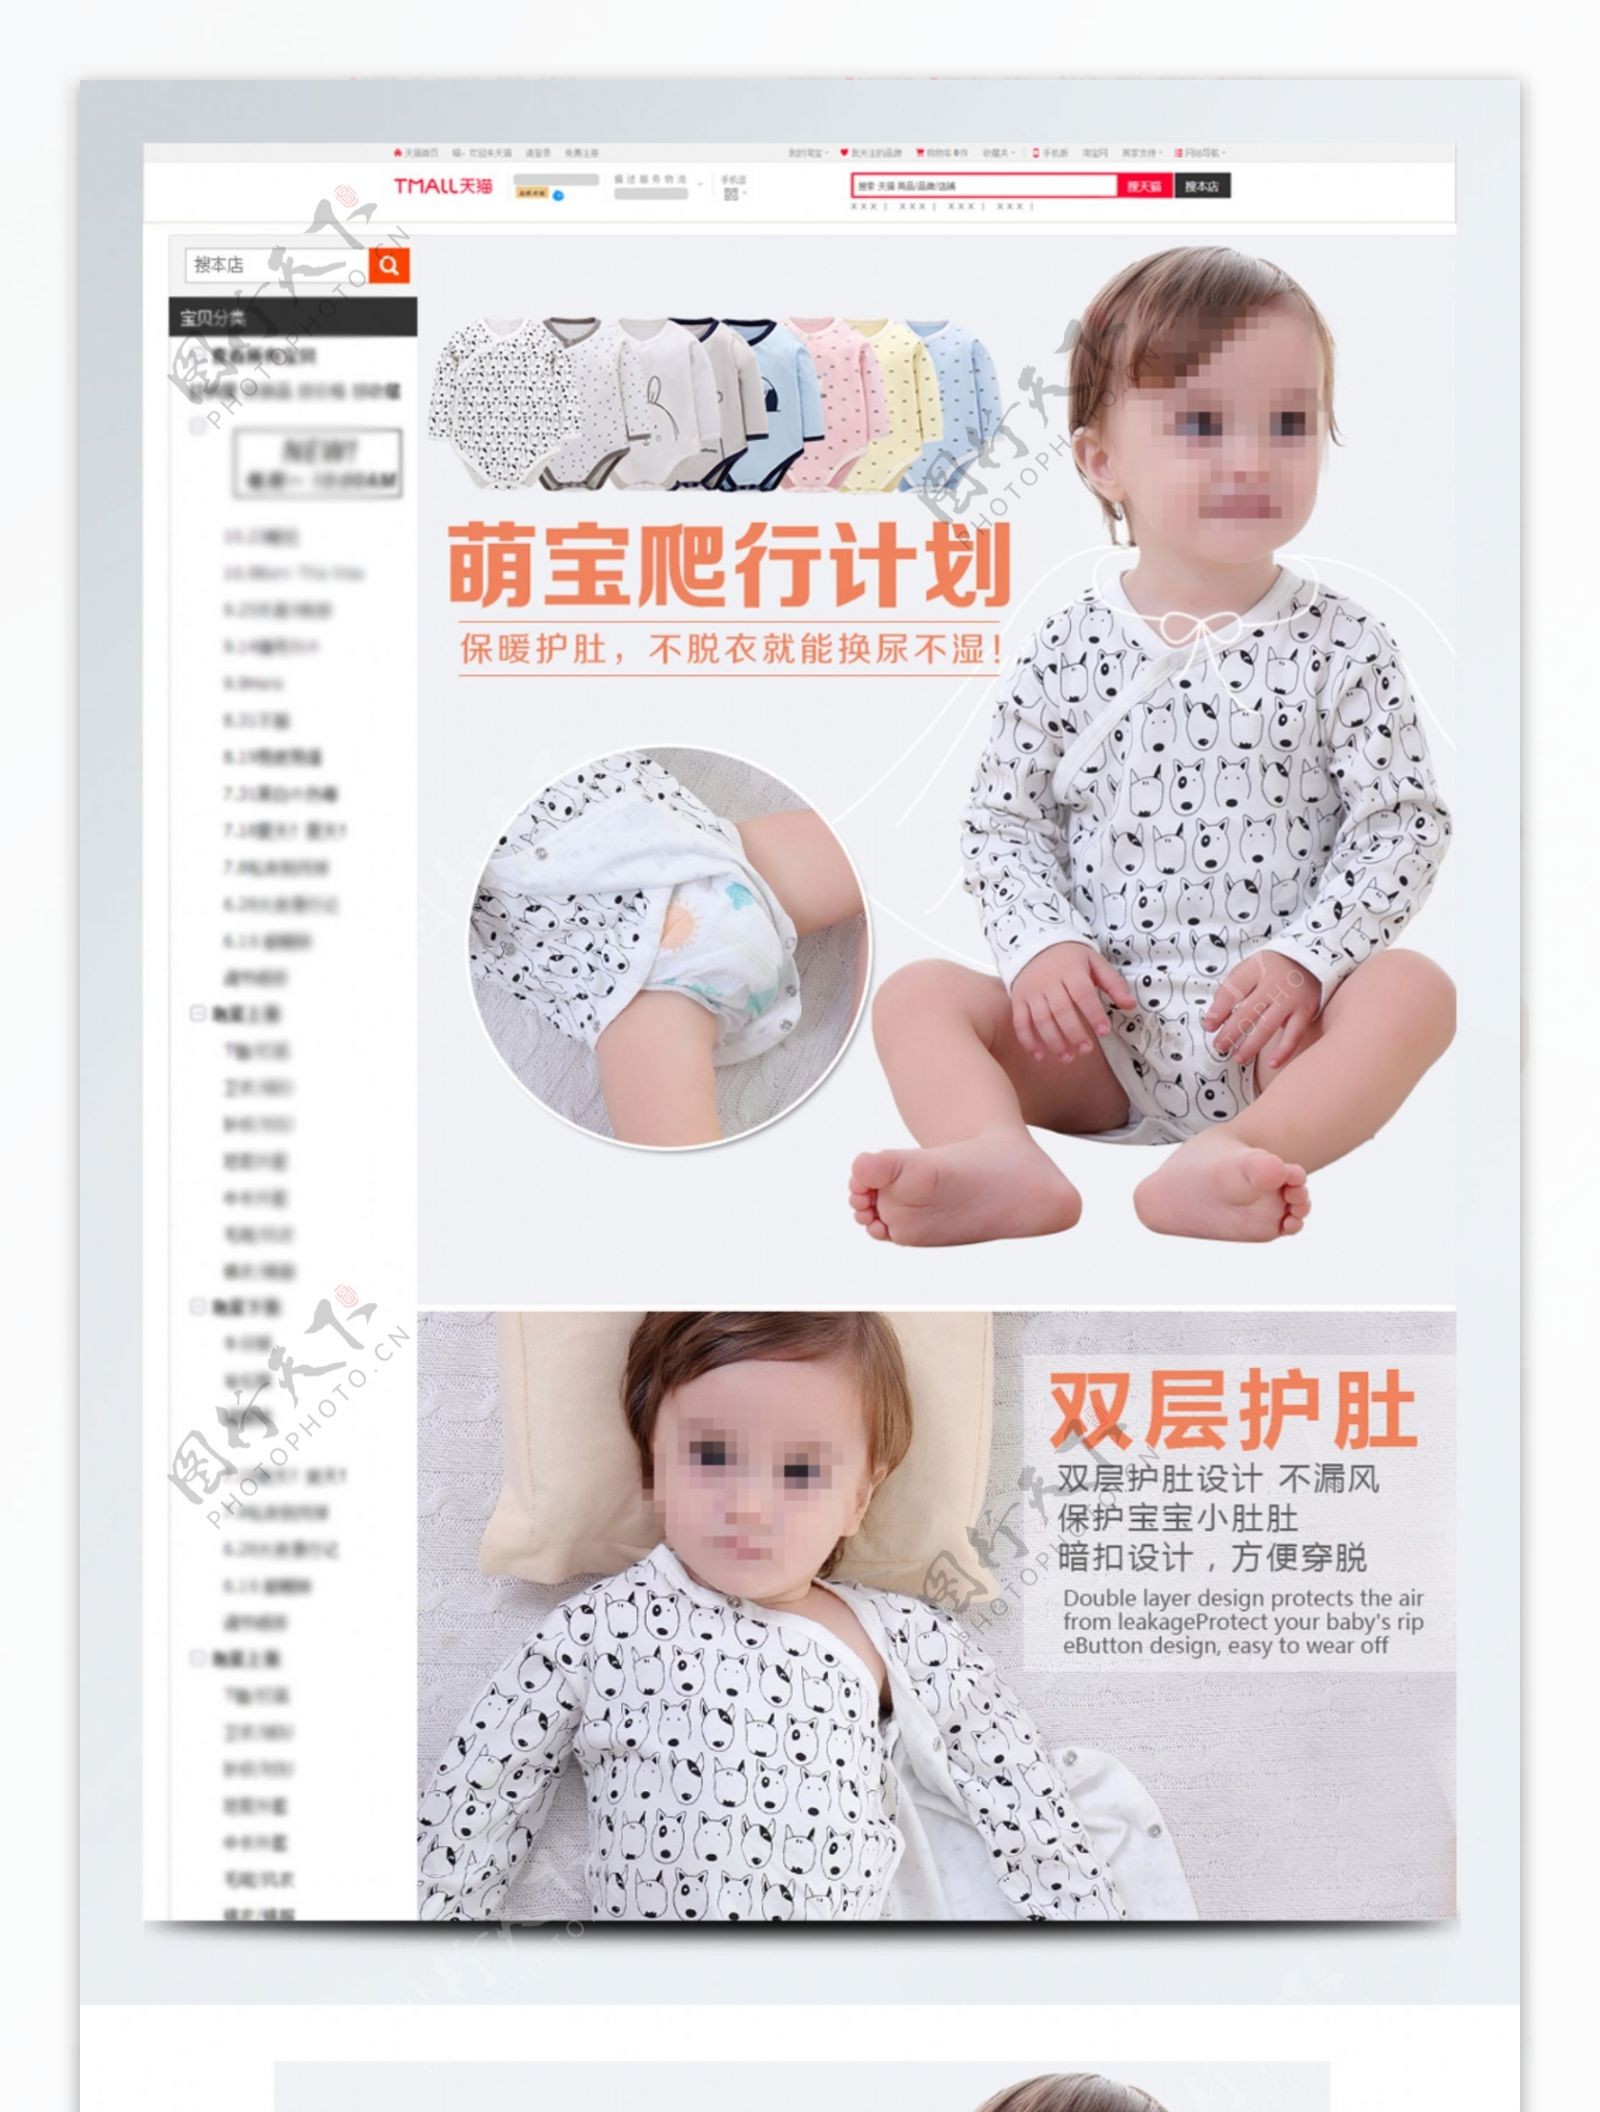 婴儿衣服三角哈衣详情模板